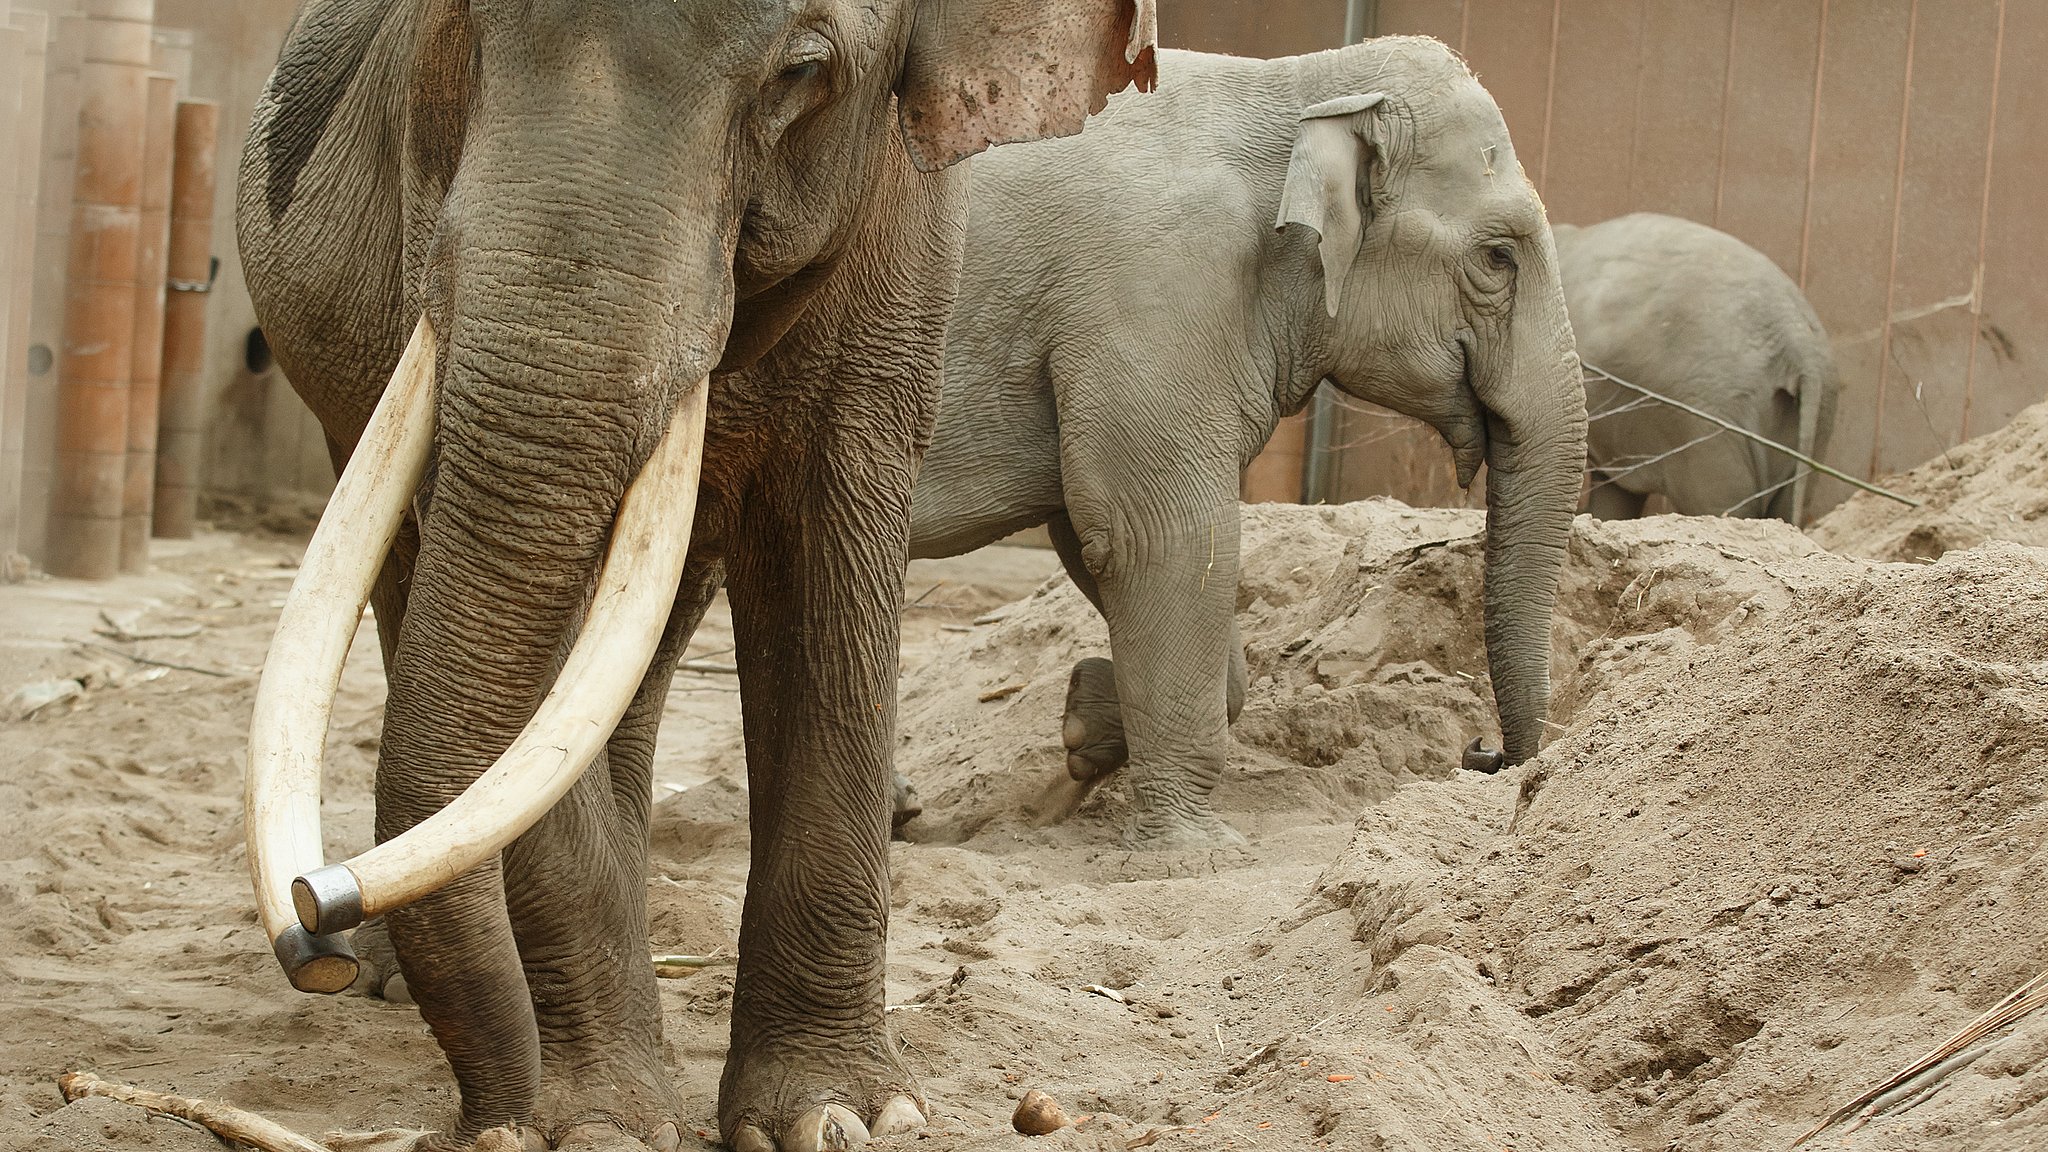 Efter år: Zoos gamle hanelefant aflivet | TV 2 Lorry